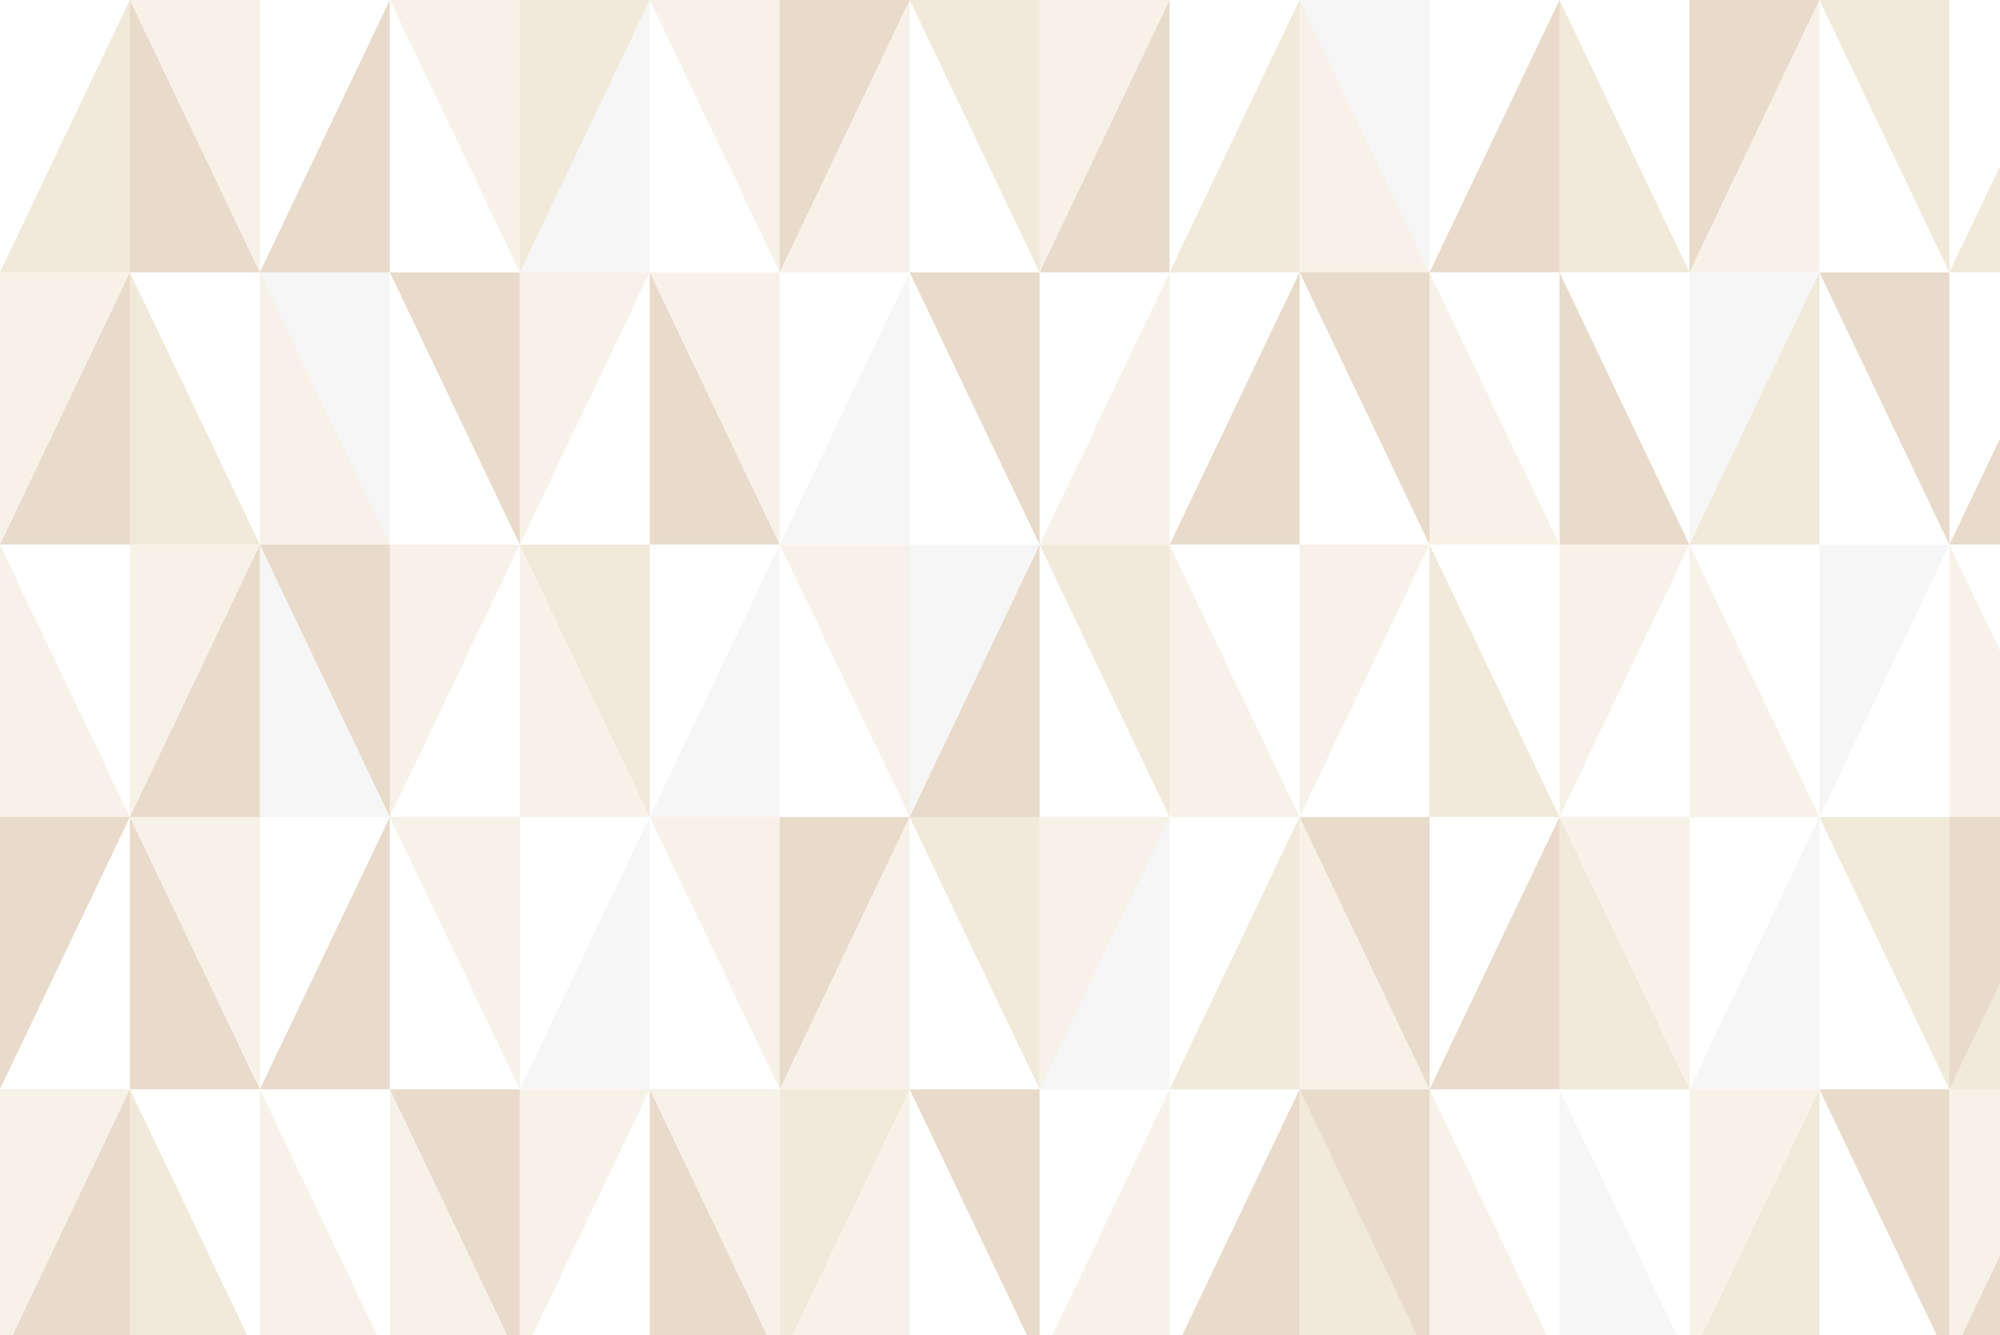             Papier peint design avec petits triangles beige sur intissé lisse mat
        